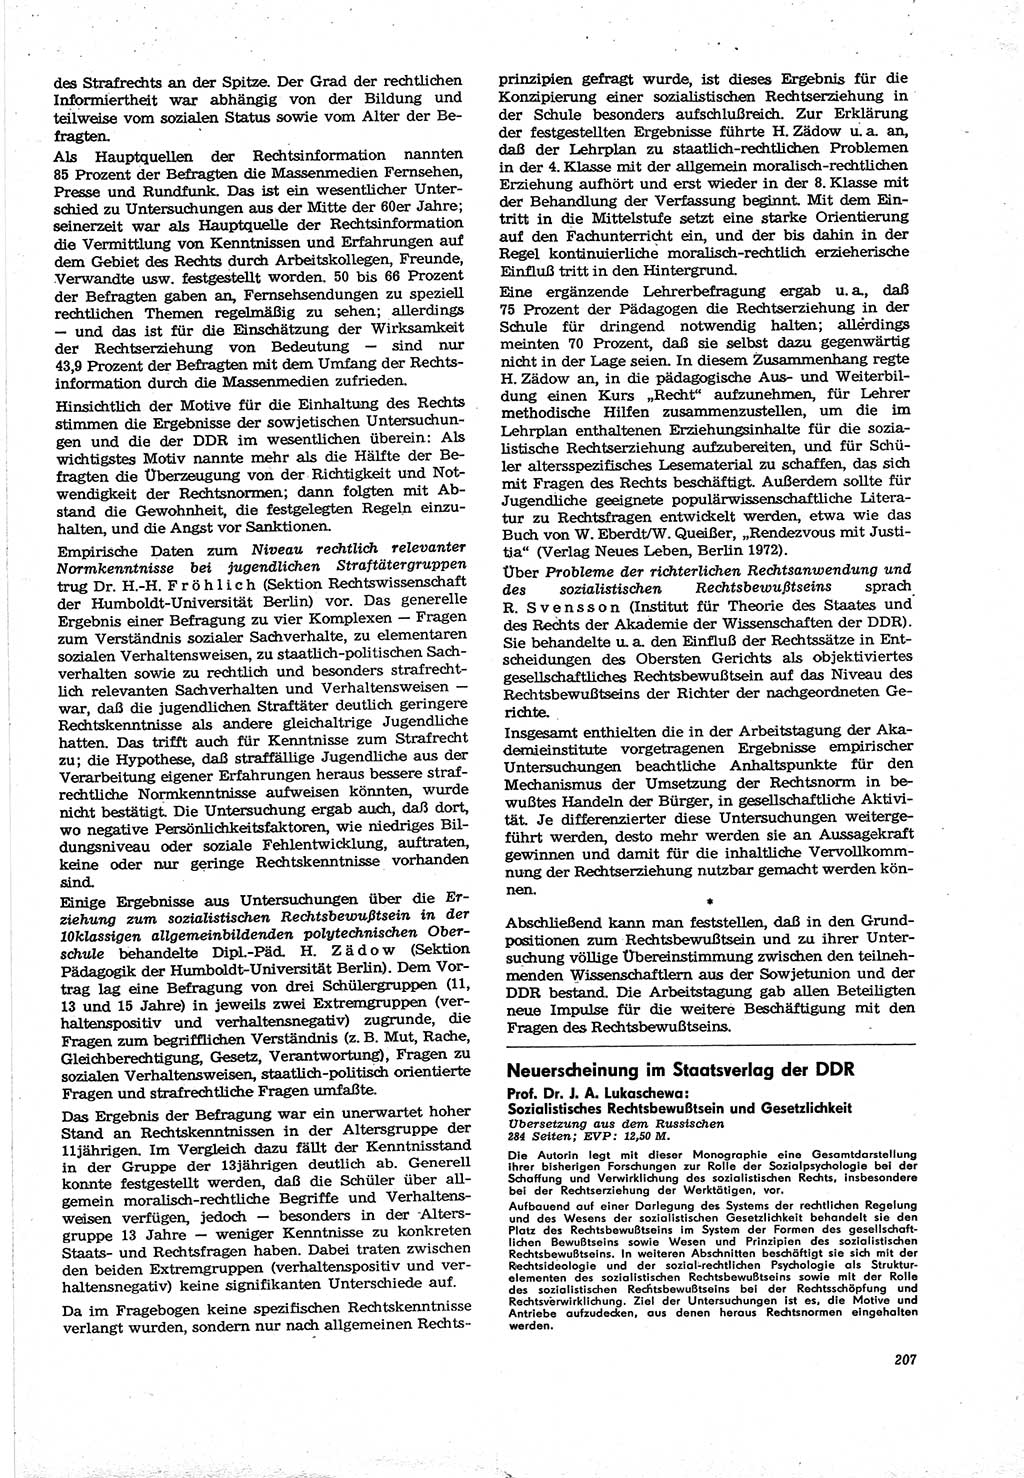 Neue Justiz (NJ), Zeitschrift für Recht und Rechtswissenschaft [Deutsche Demokratische Republik (DDR)], 30. Jahrgang 1976, Seite 207 (NJ DDR 1976, S. 207)